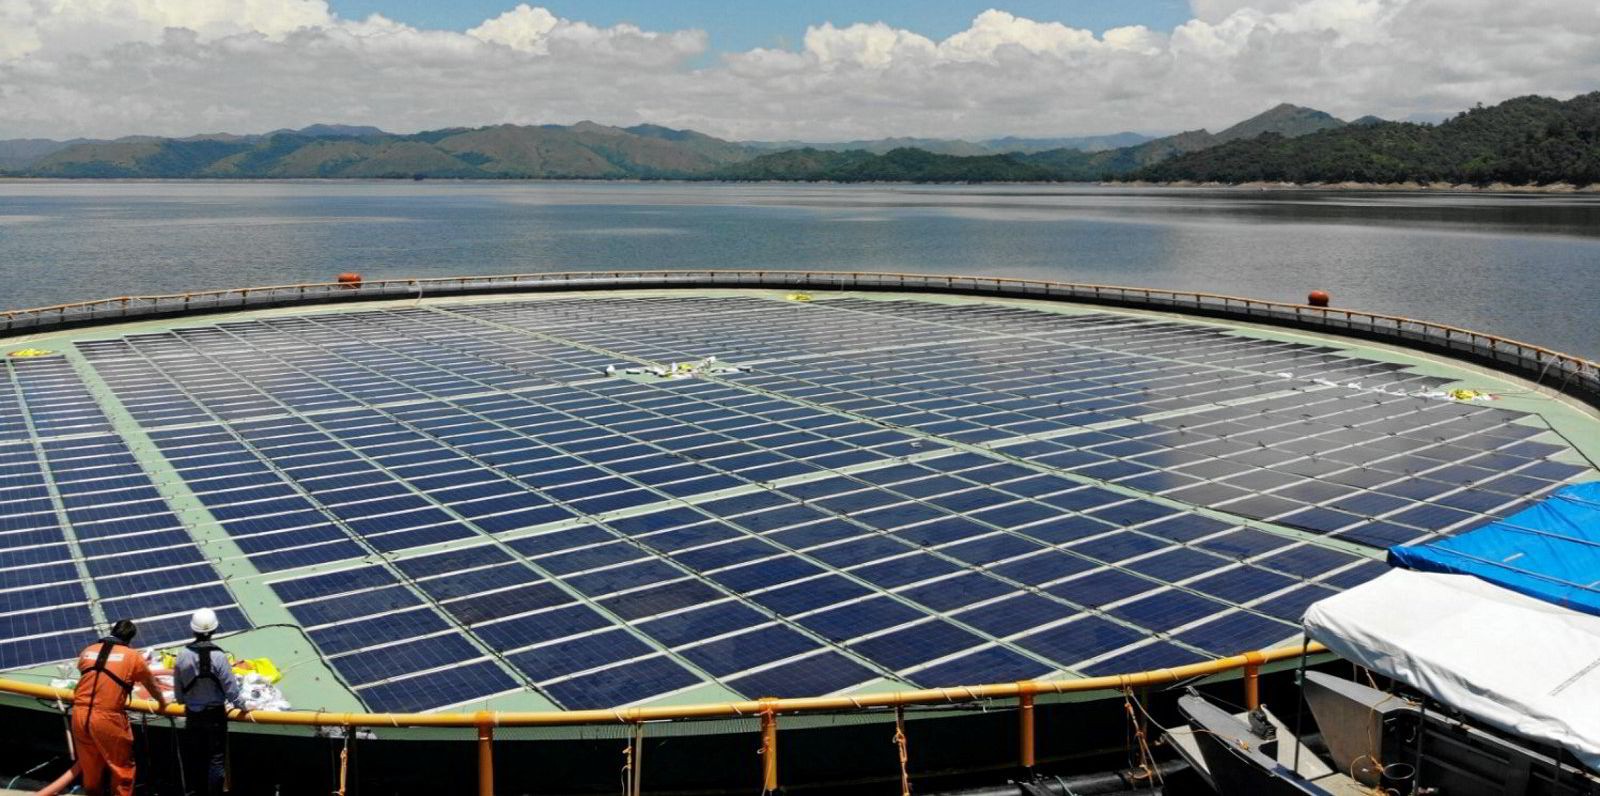 L’impianto solare galleggiante appartenente alla Huaneng Power International e realizzato a Dezhou, nella provincia cinese dello Shandong eng Power International e realizzato a Dezhou, nella provincia dello Shandong